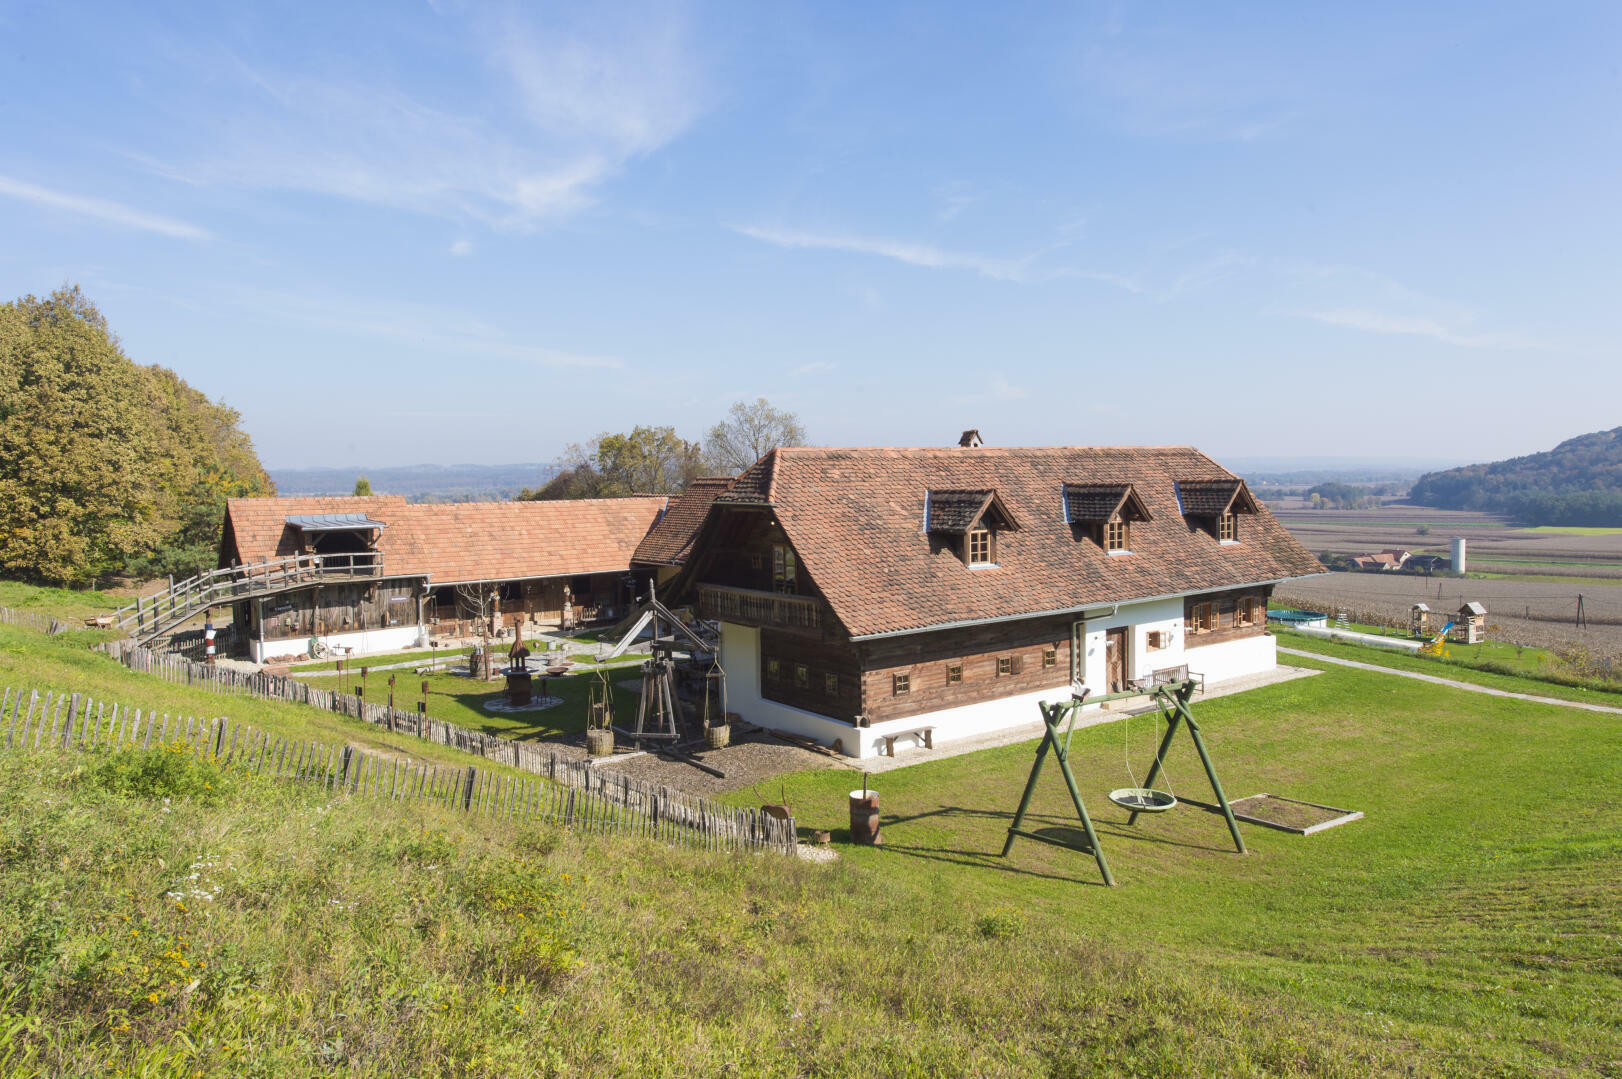 Land- und Forstwirtschaft zu kaufen: Ober-Henndorf, 8020 Graz - Landhaus in Thermenregion (7)